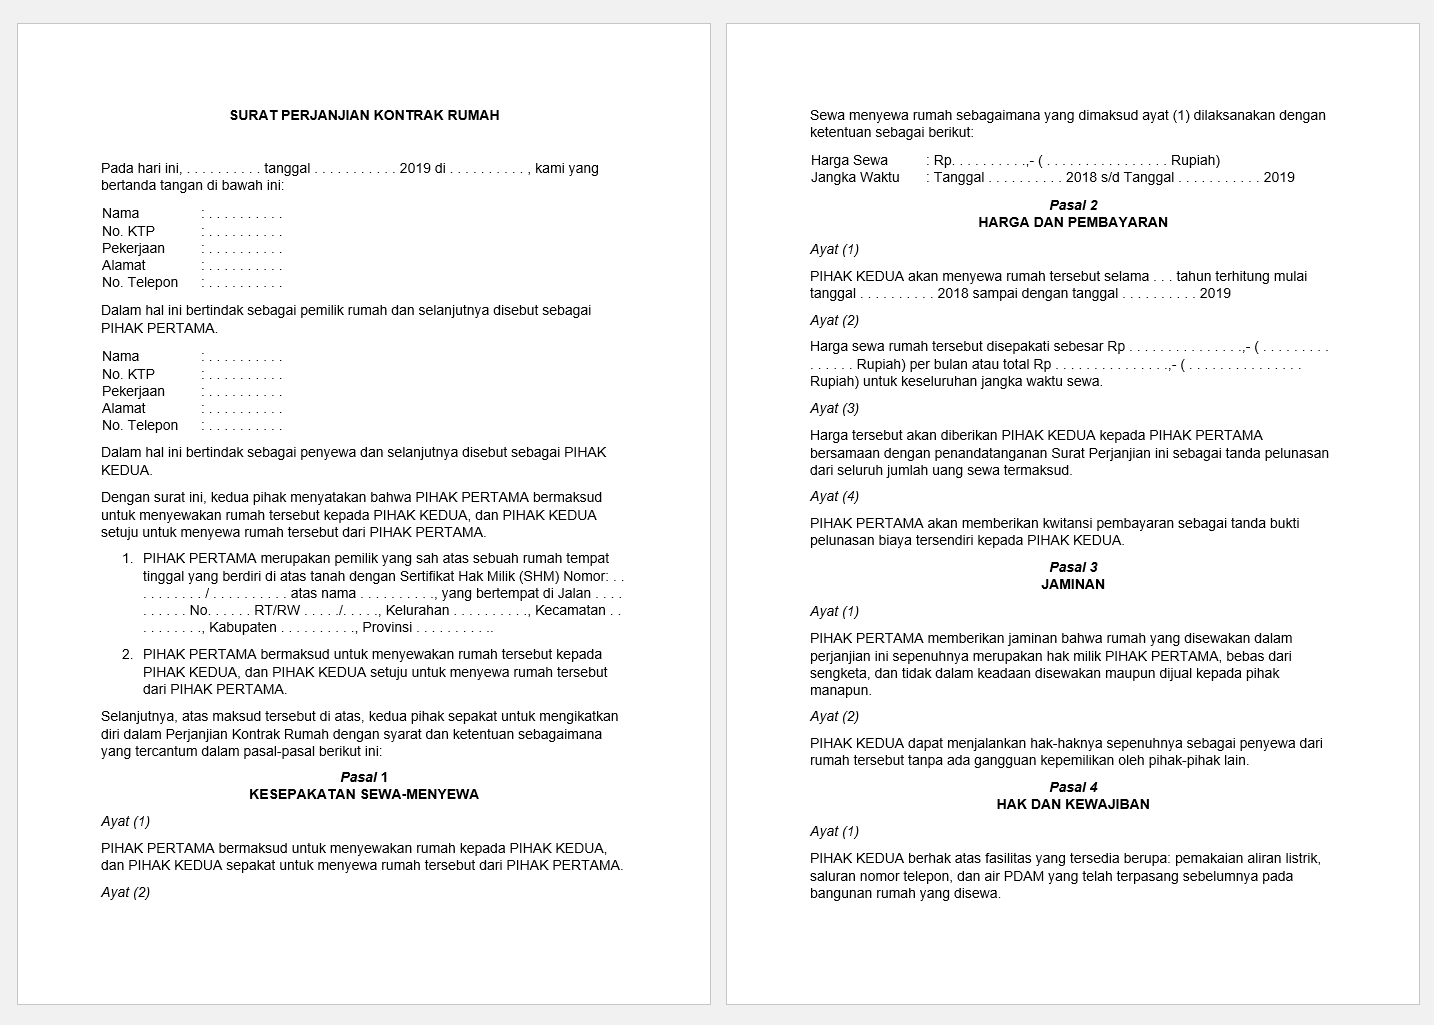 Detail Surat Perjanjian Kontrak Rumah 1 Tahun Nomer 33